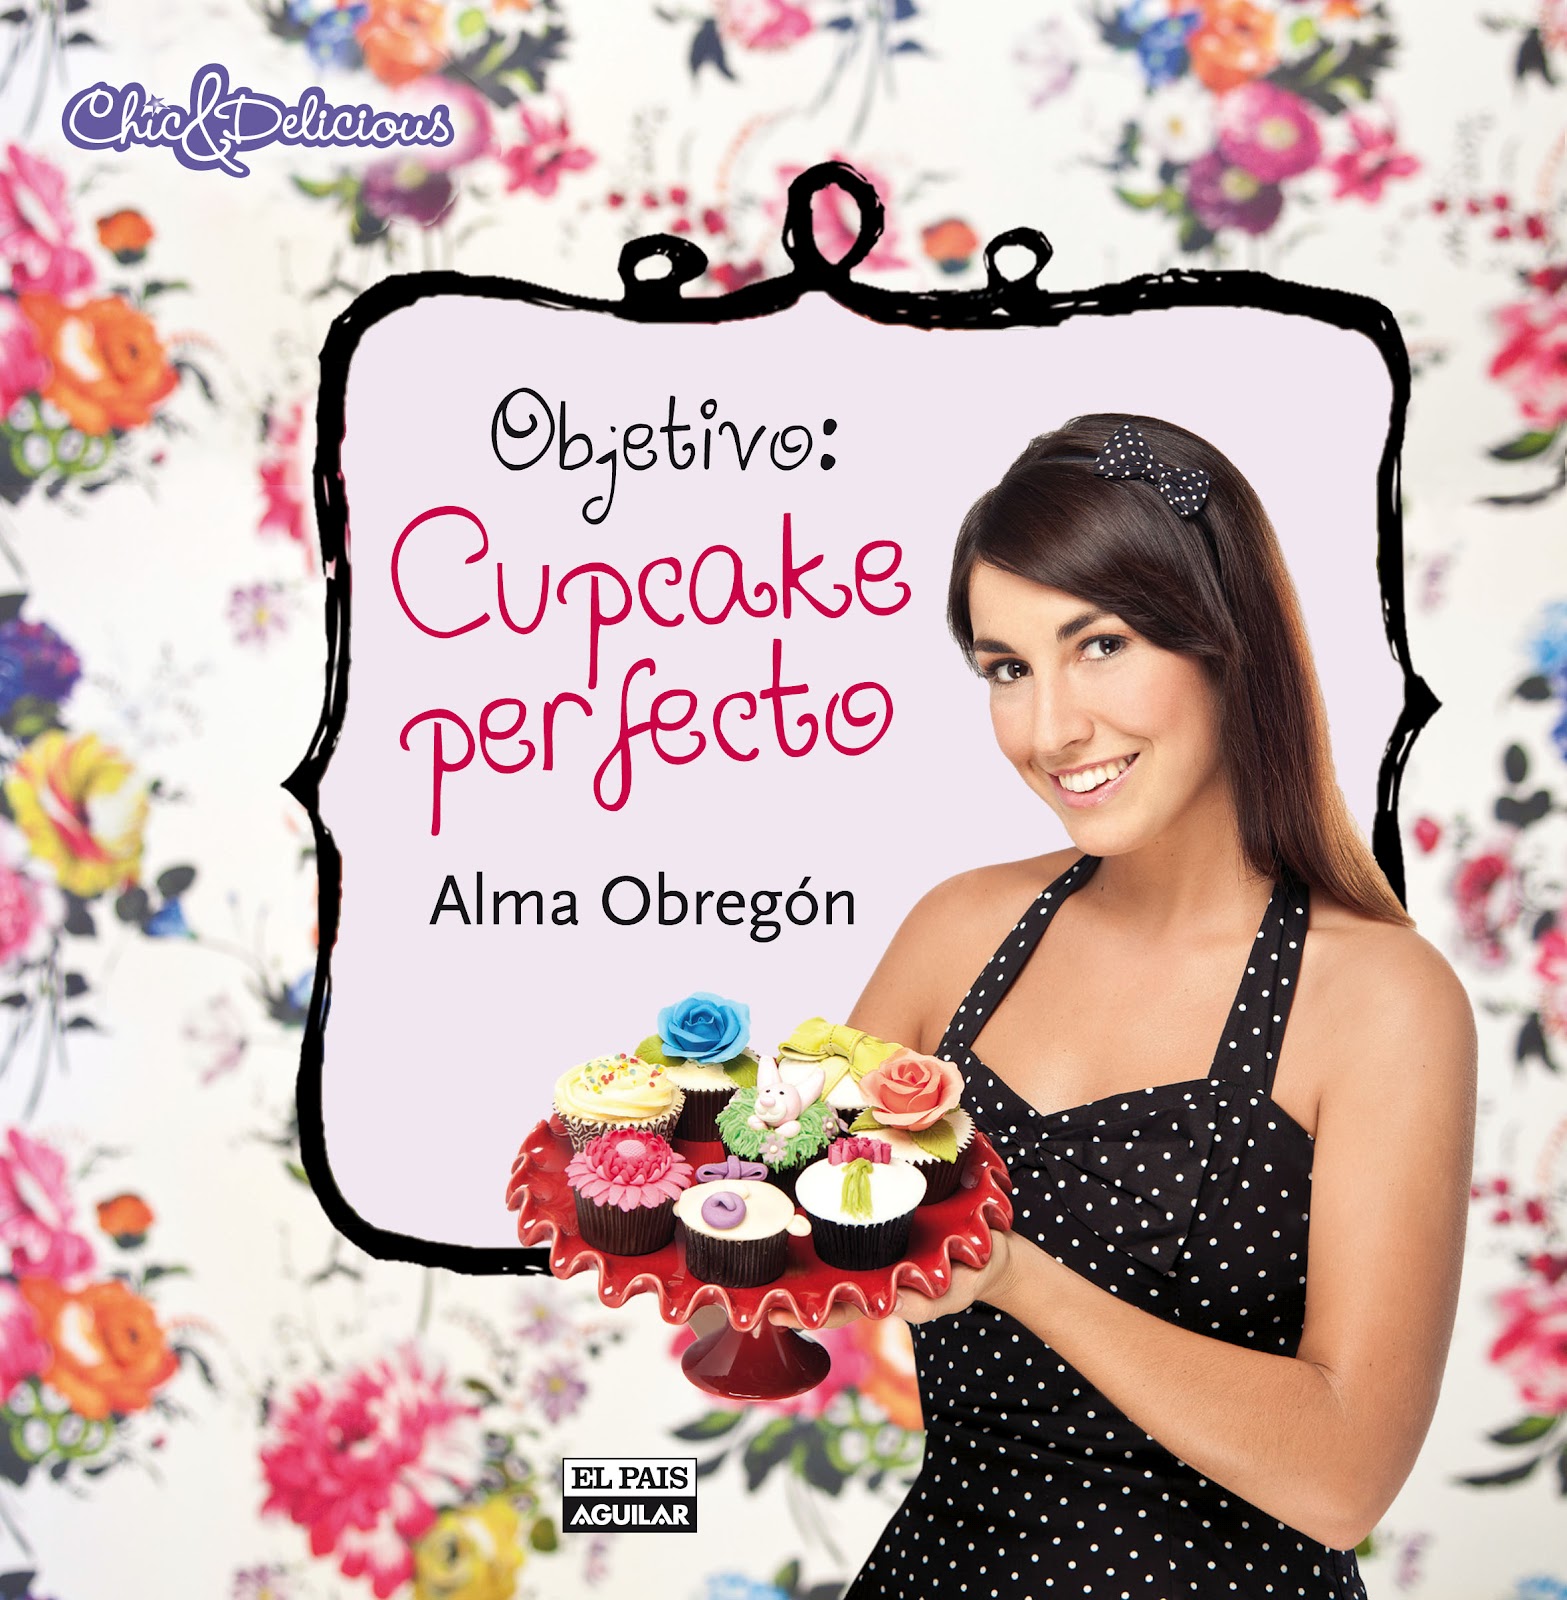 alma-obregon_cupcake_perfecto